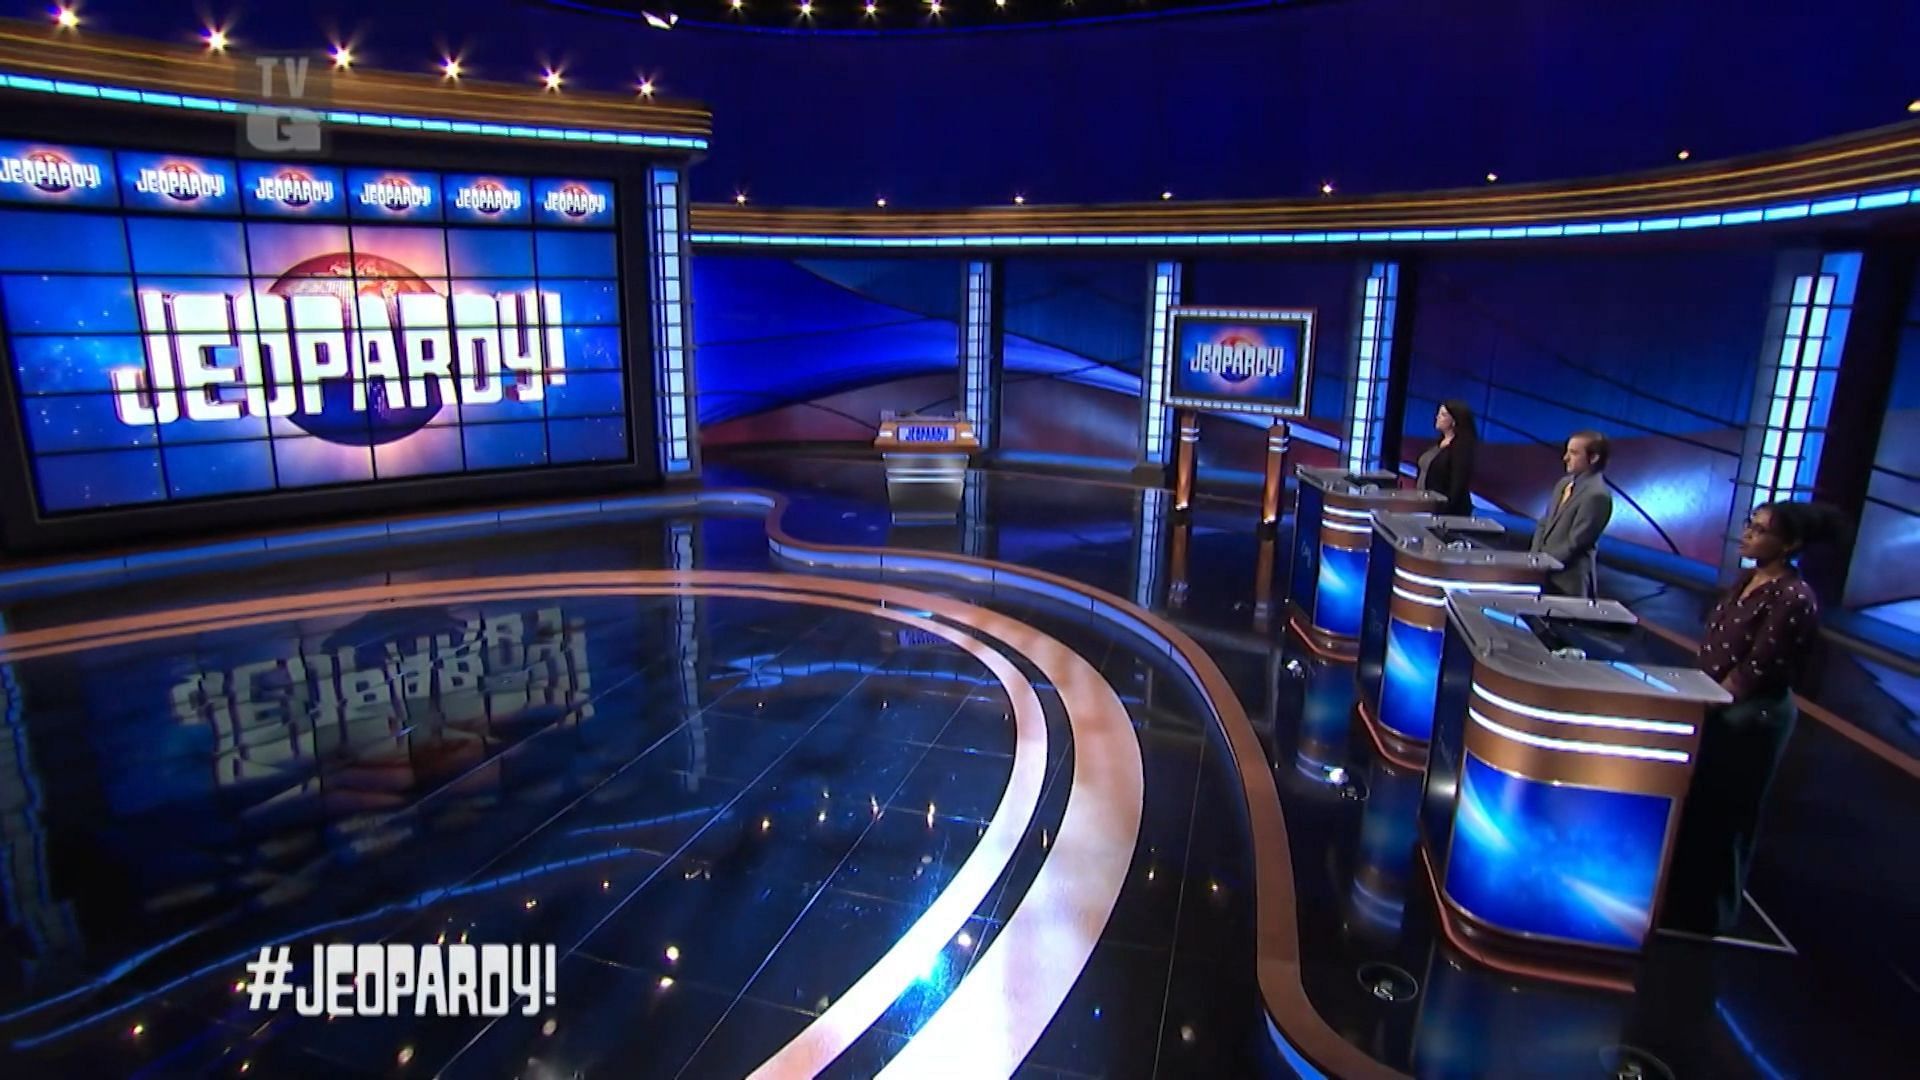 The set of Jeopardy! (Image via @Jeopadry/instagram)